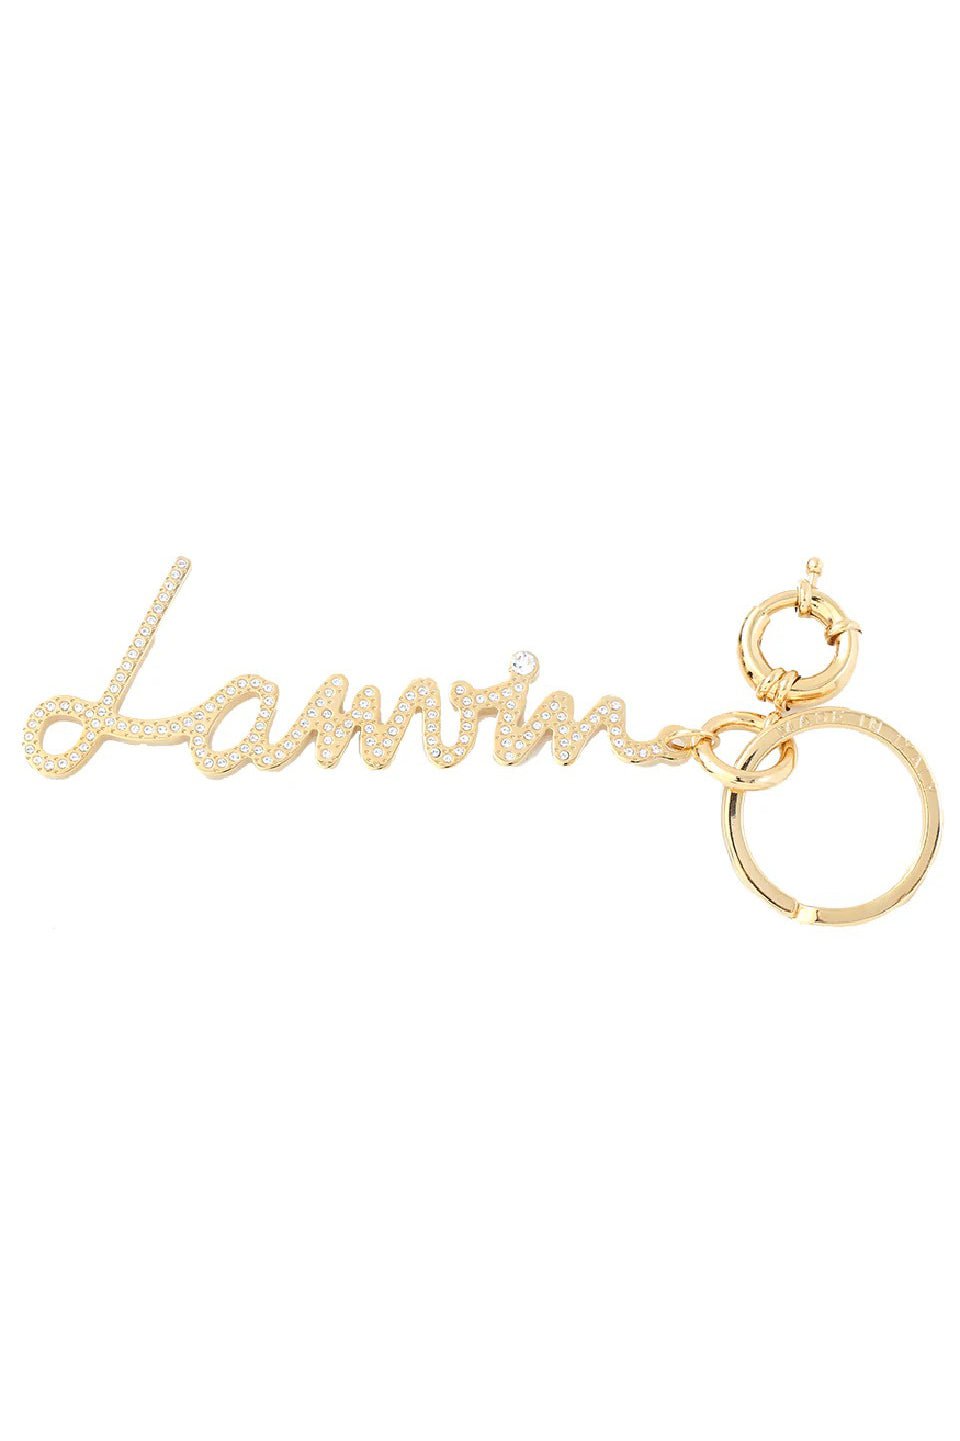 LANVIN-Lanvin Rhinestone Keychain-GOLD